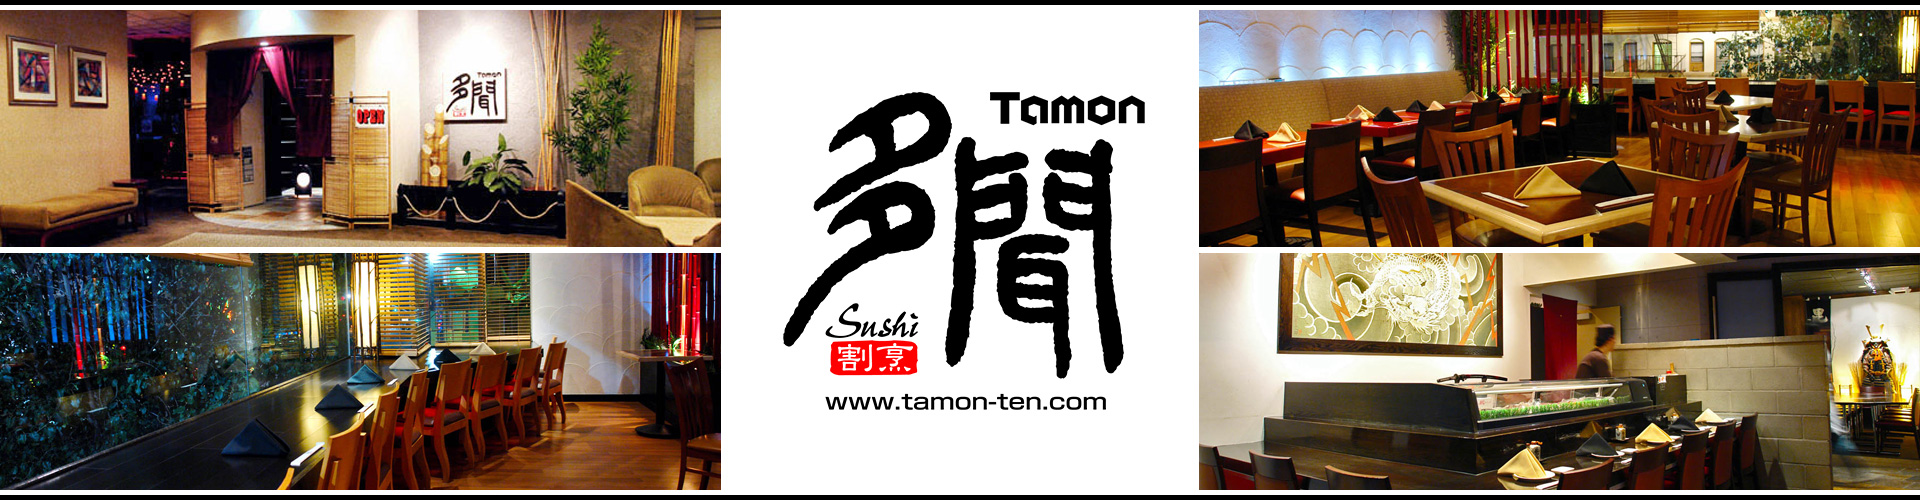 割烹多門 - 公式サイトはwww.tamon-ten.comへ